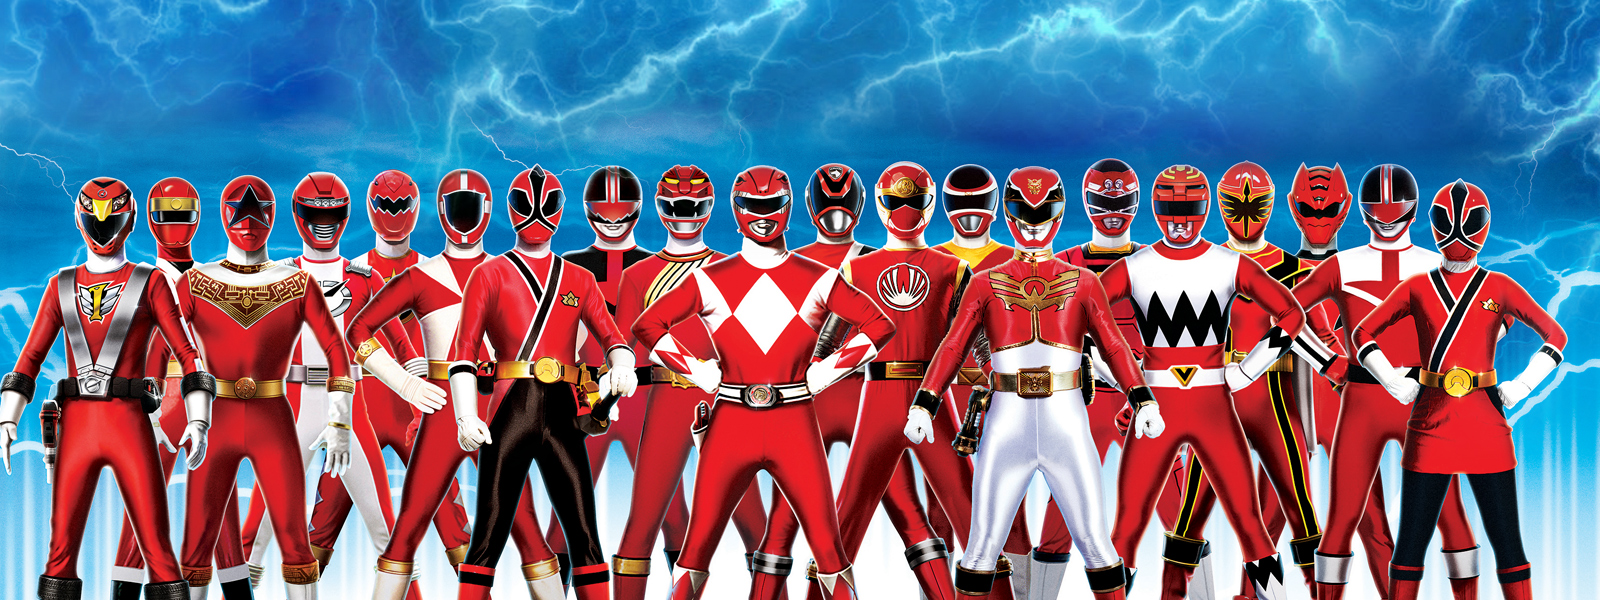 10 Red Power Rangers - HD Wallpaper 